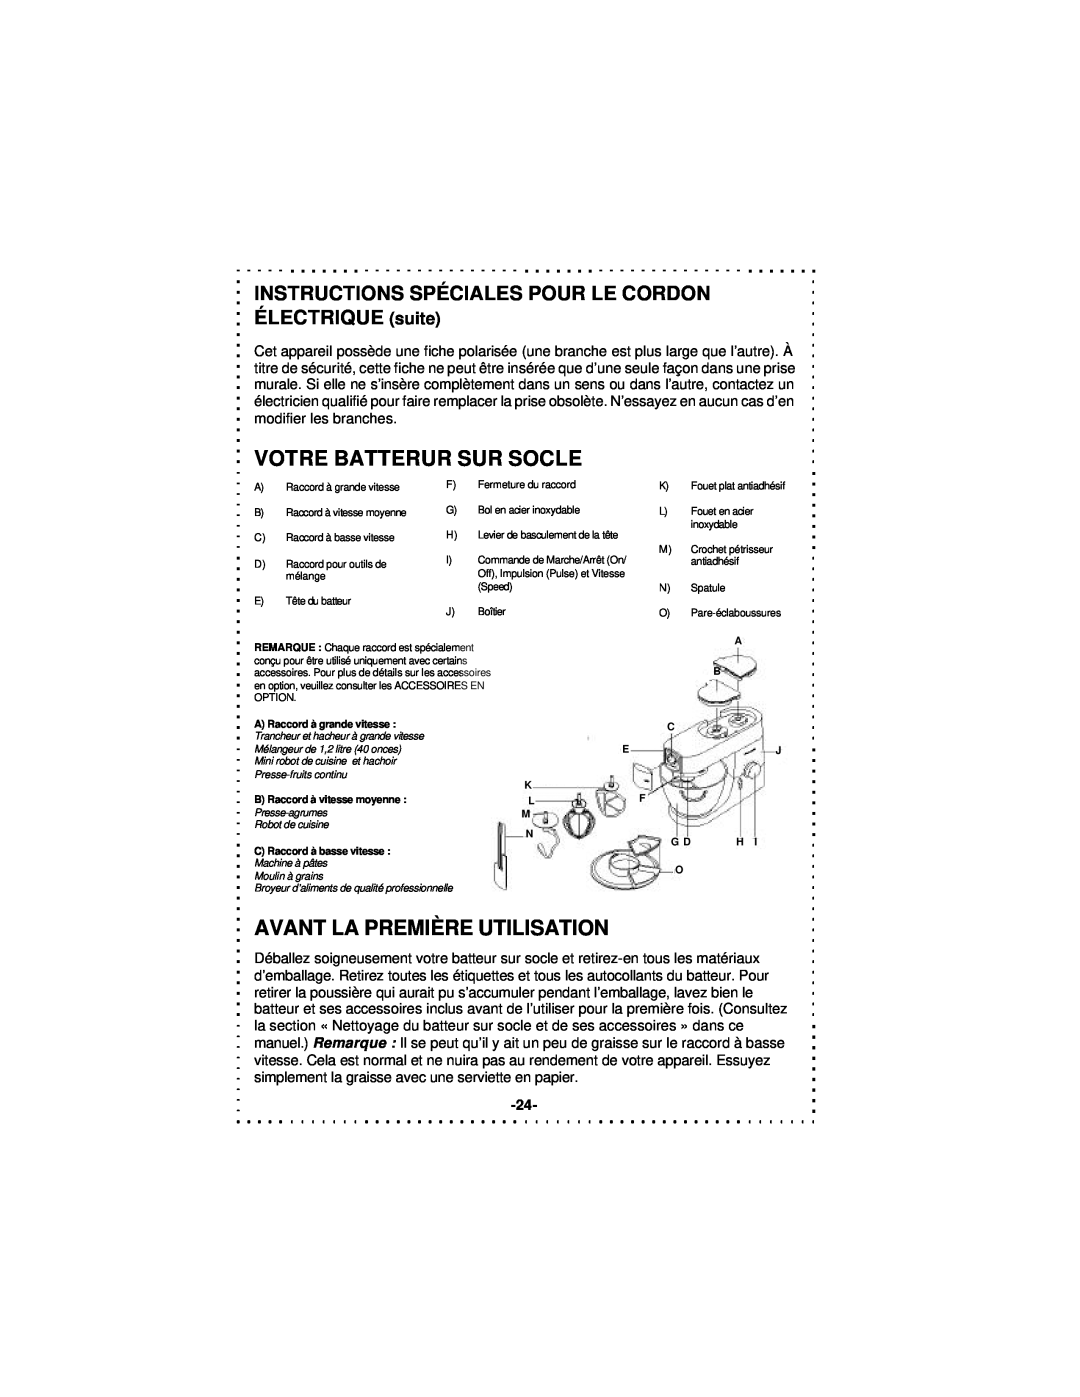 DeLonghi DSM5 - 7 Series instruction manual Votre Batterur Sur Socle, Avant La Première Utilisation 